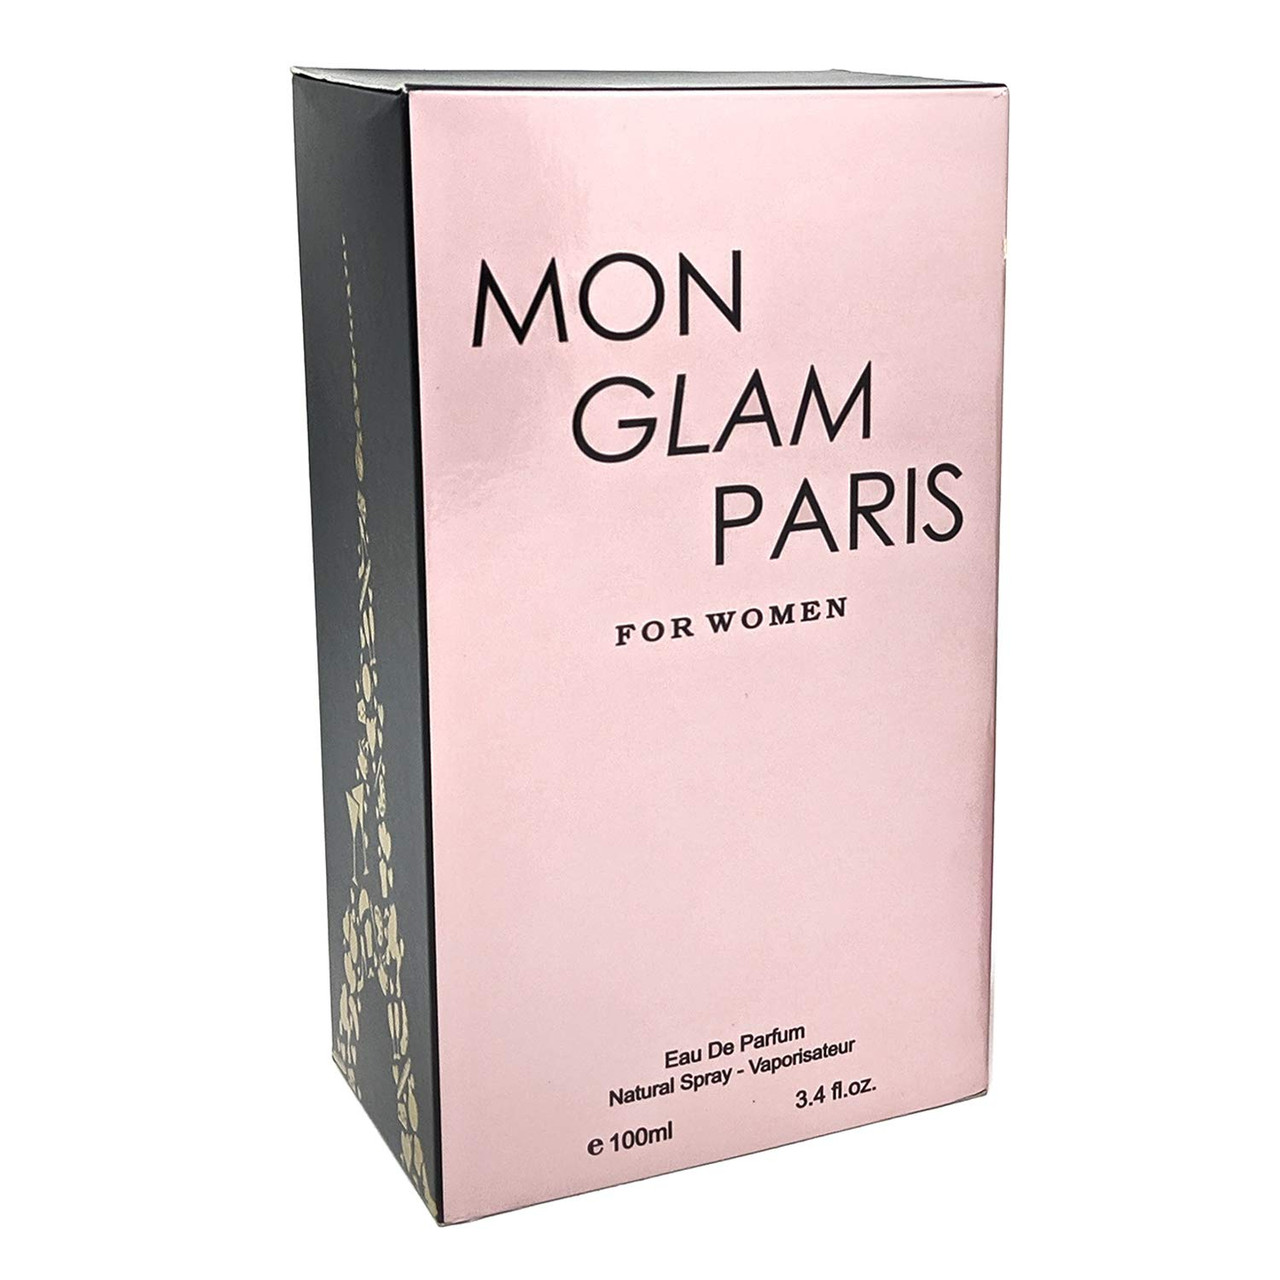 FRAGRANCE COUTURE MON GLAM PARIS 3.4 EAU DE PARFUM SPRAY FOR WOMEN